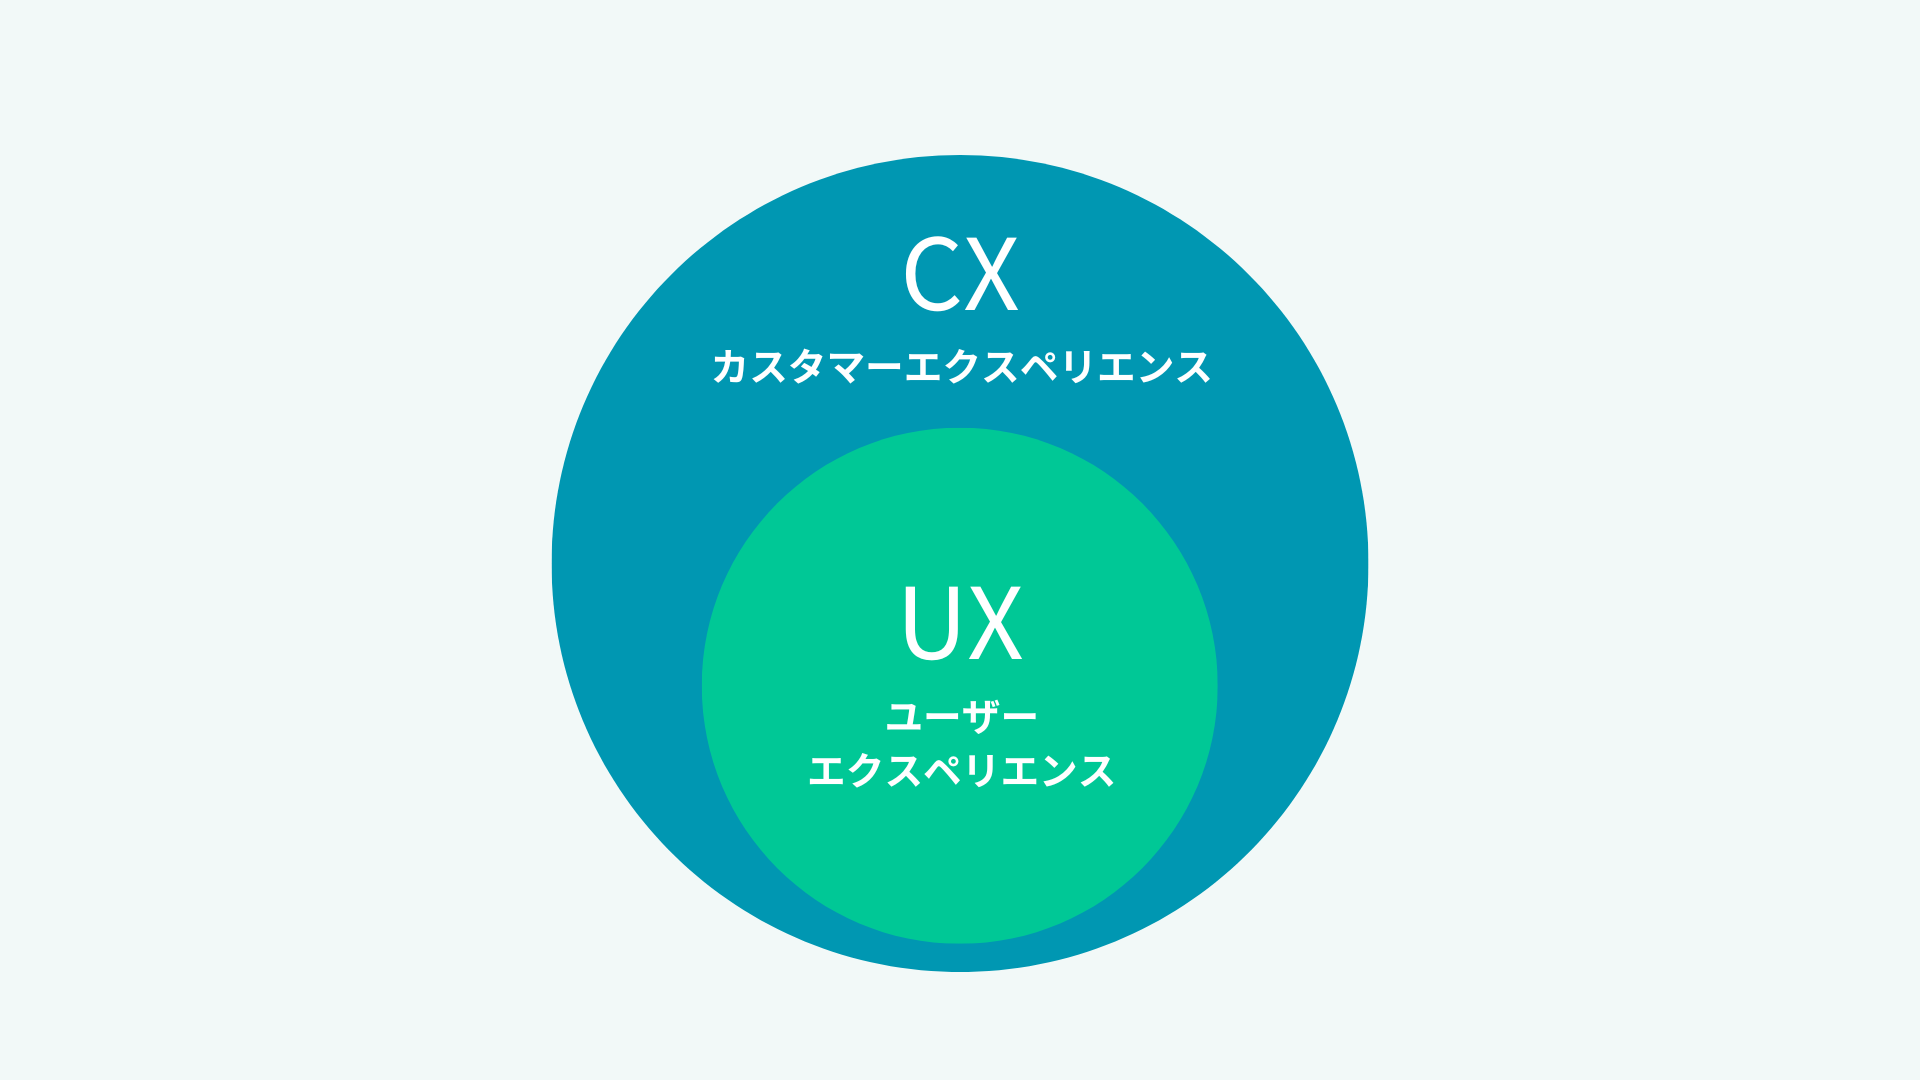 UXとCXの違いの図